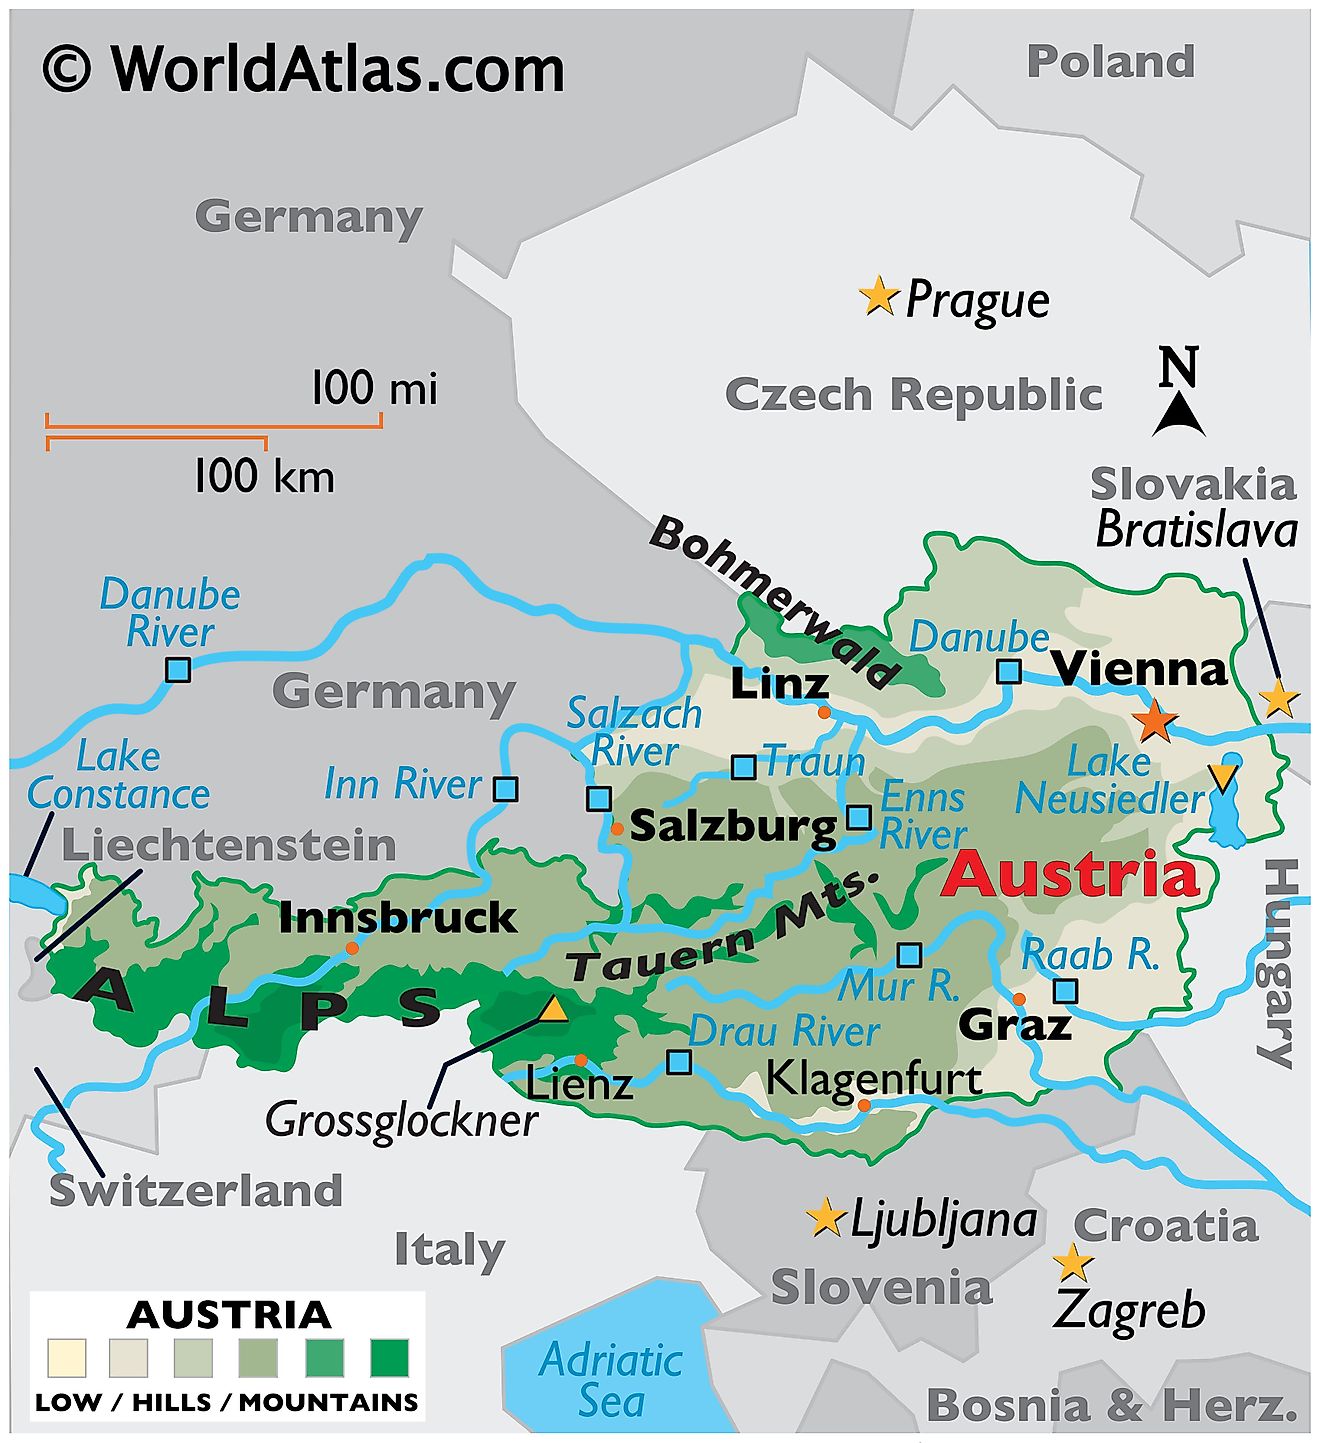 Mapa físico de Austria que muestra el terreno, los ríos principales, los puntos extremos, las cadenas montañosas, el lago Neusiedler, las ciudades importantes, las fronteras internacionales, etc.